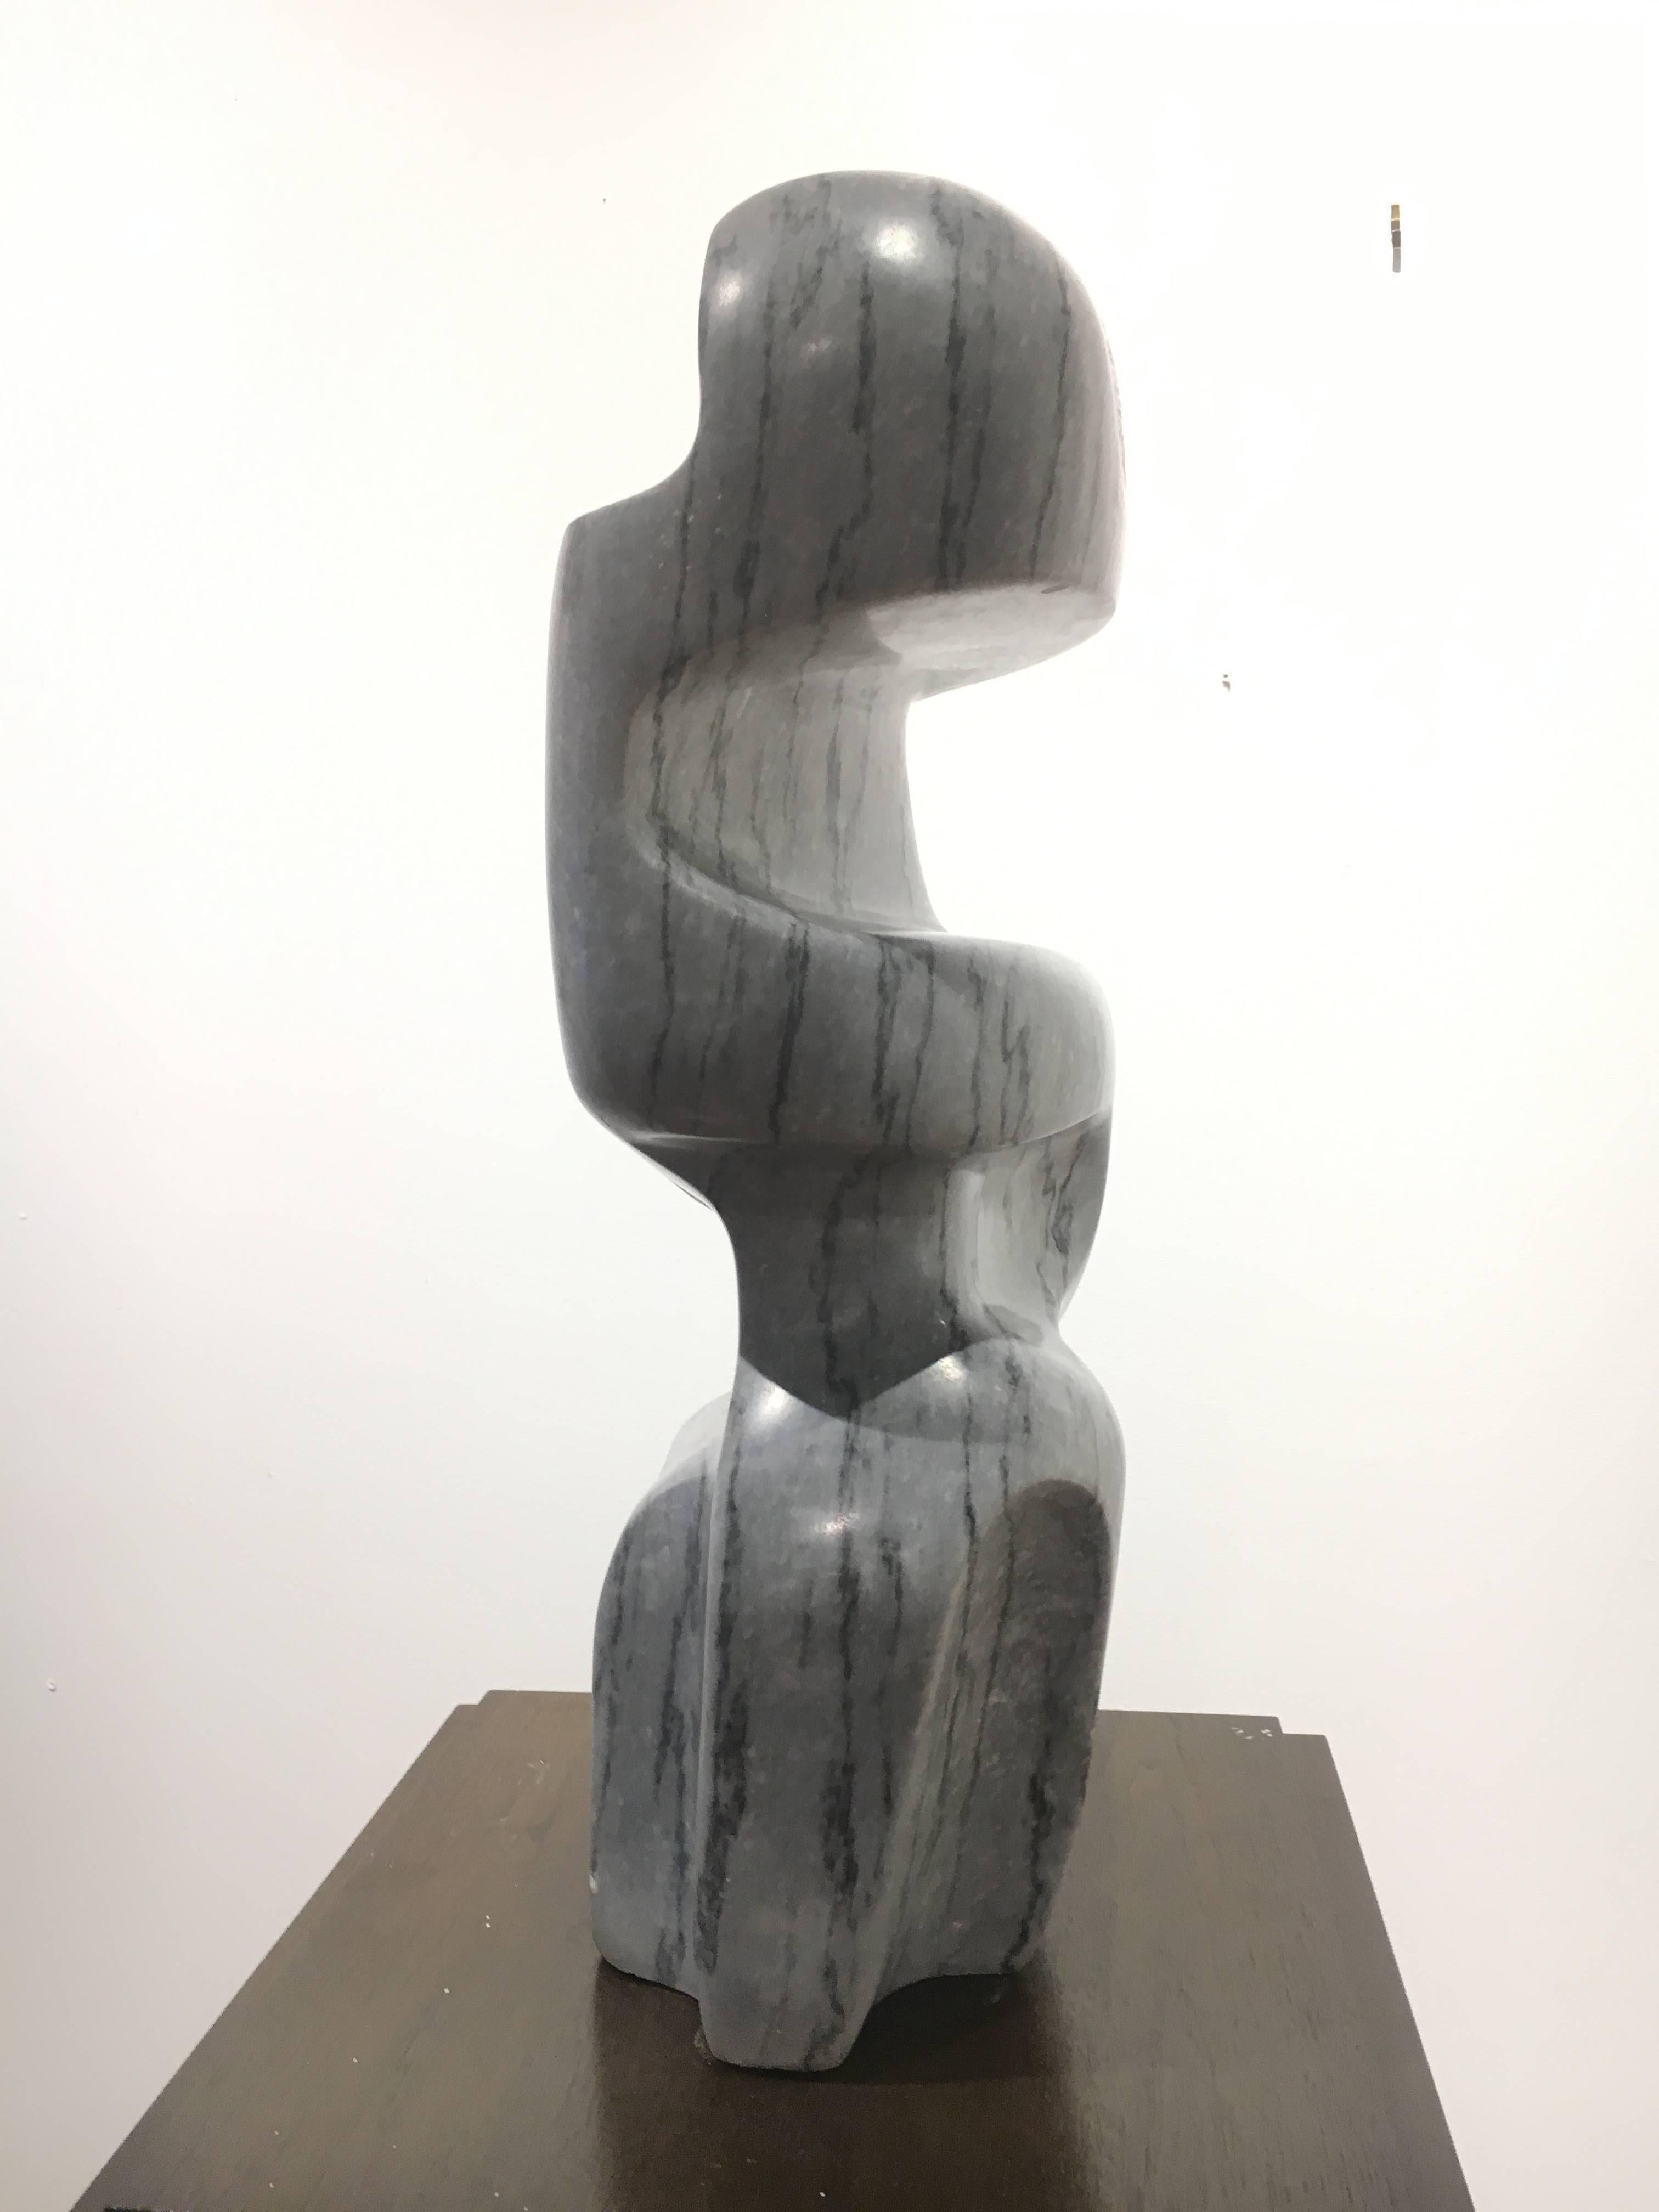 Form - Sculpture by Robert Winslow